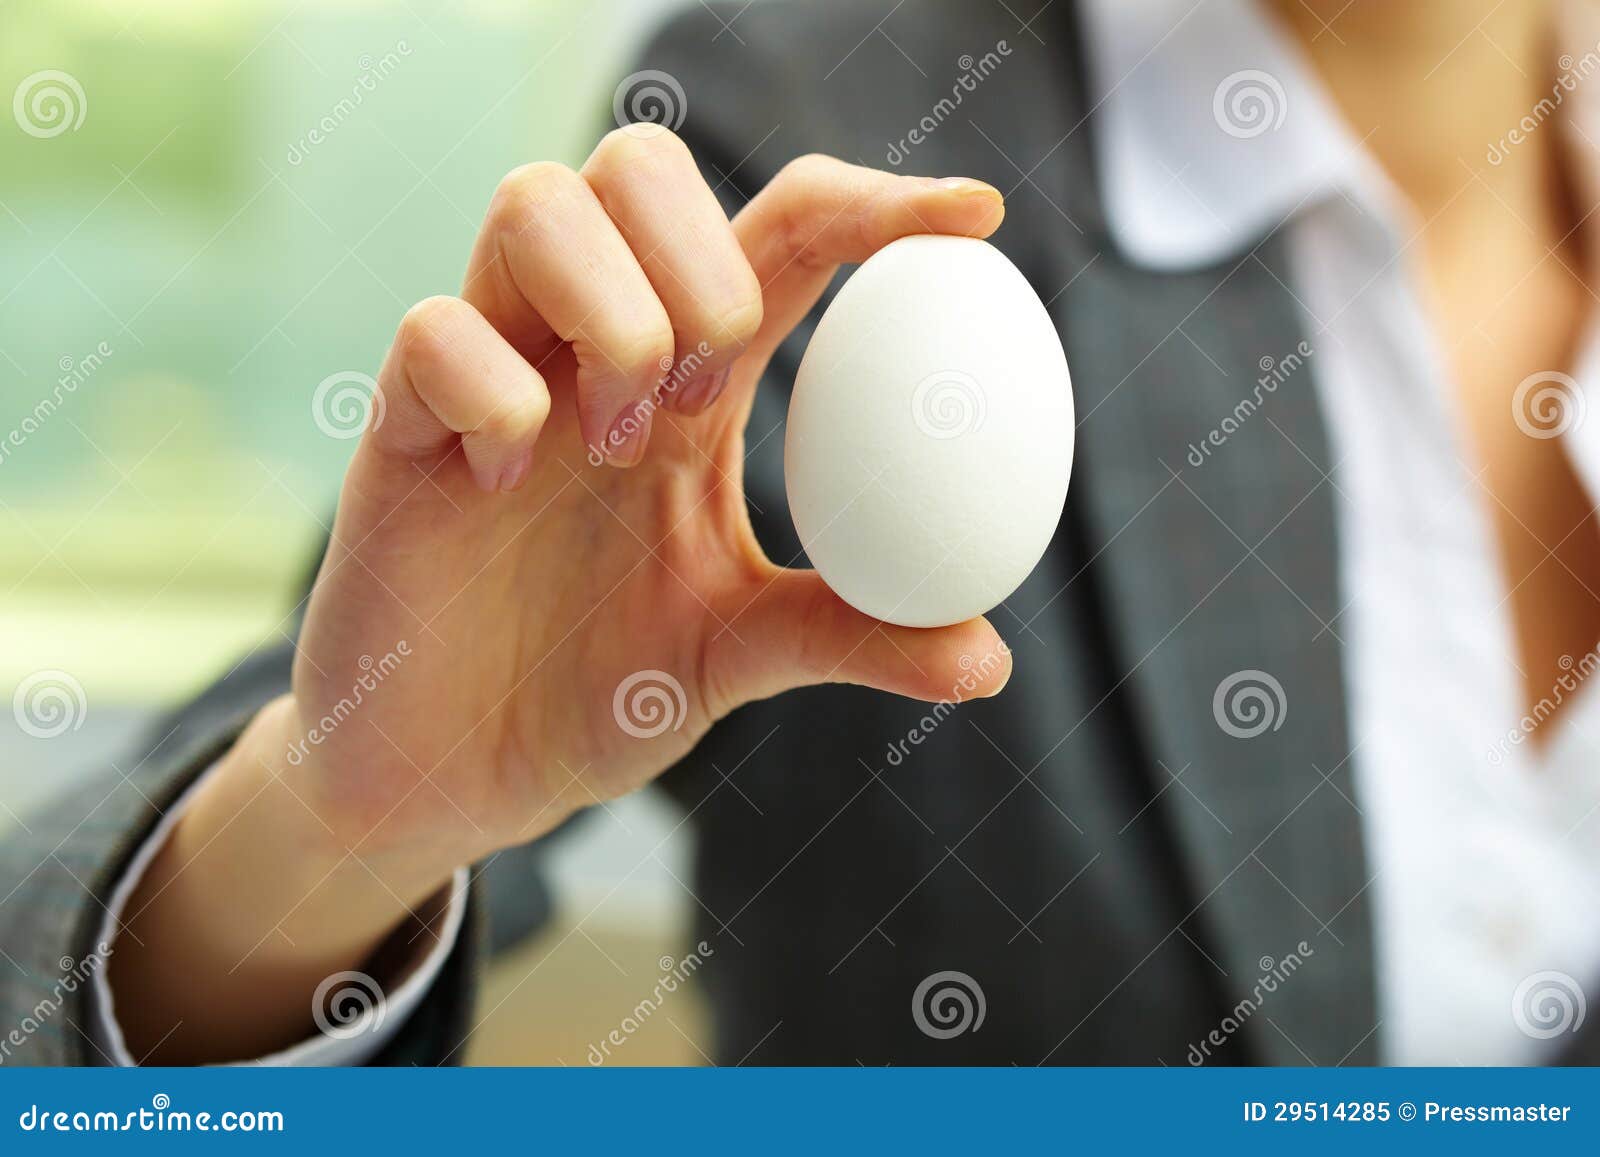 Яйца в руках женщины. Яйцо показывает лайк. Маленькие яйца в женской руке.